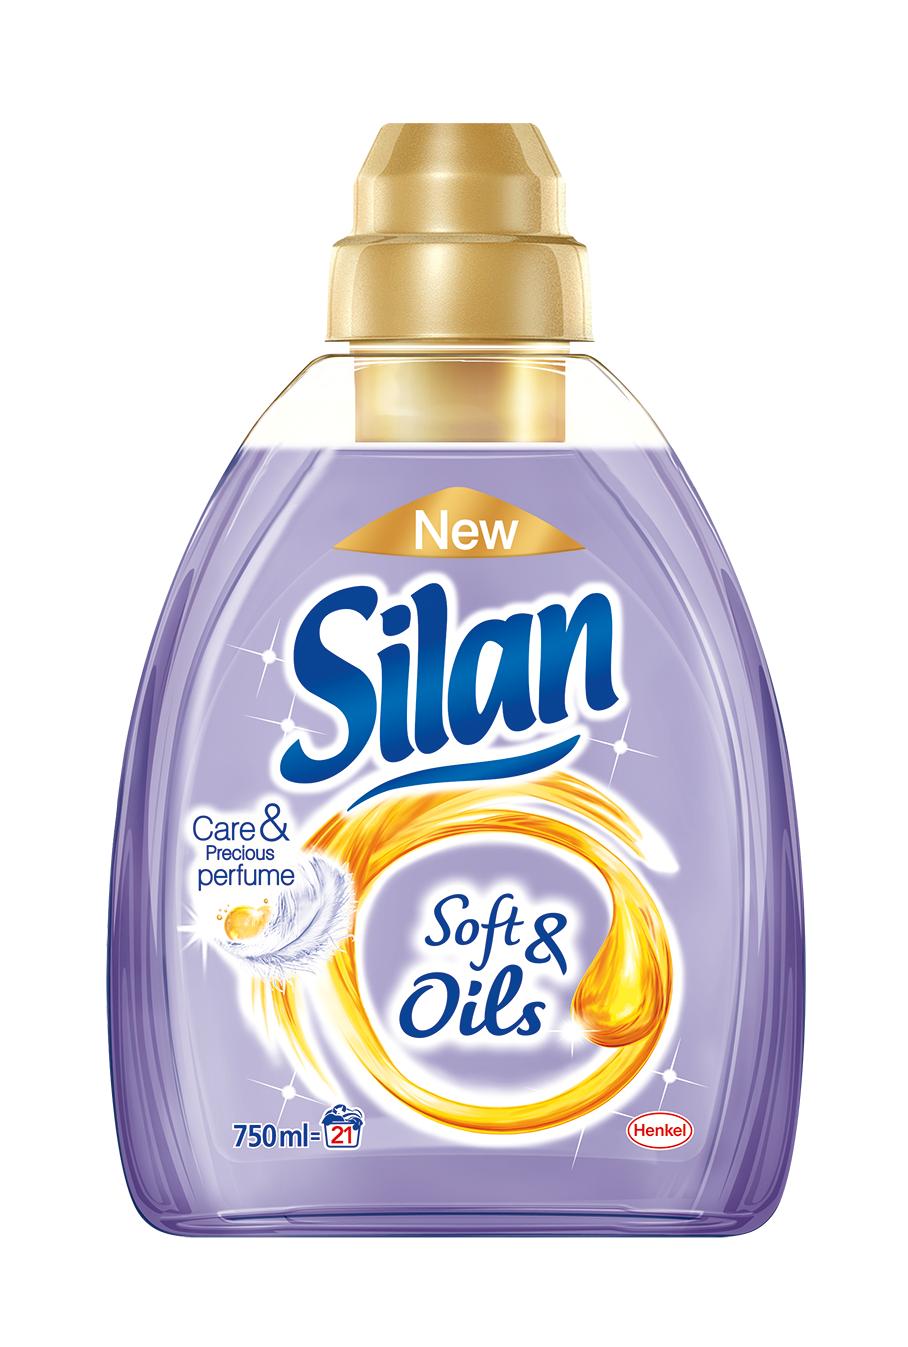 Nowy Silan Soft & Oils – wyjątkowa pielęgnacja dla ubrań